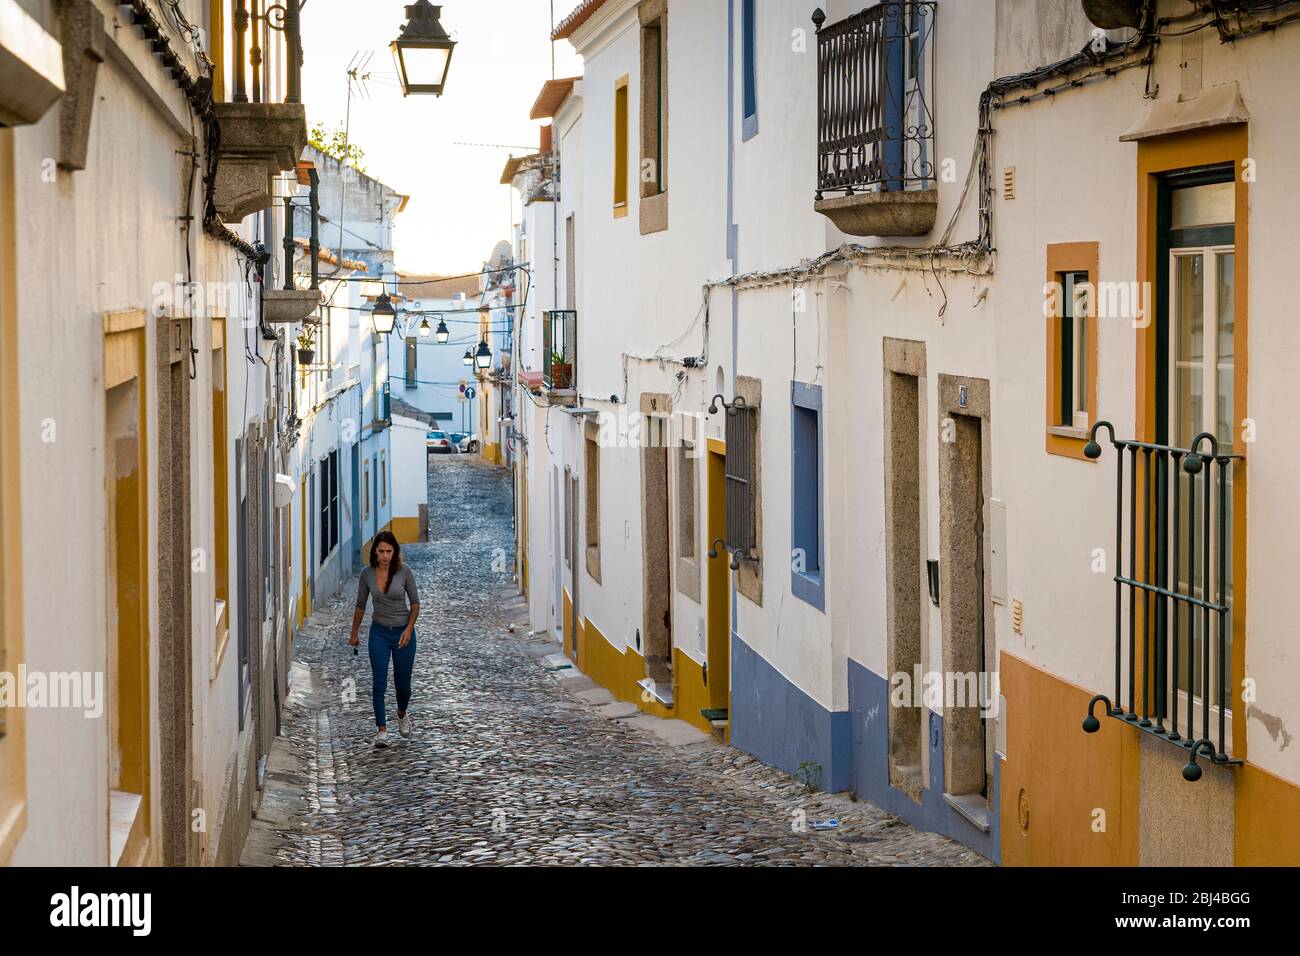 Giovane donna in abiti casual camminando in strada ciottoli passando tipiche case bianche e gialle a Evora, Portogallo Foto Stock